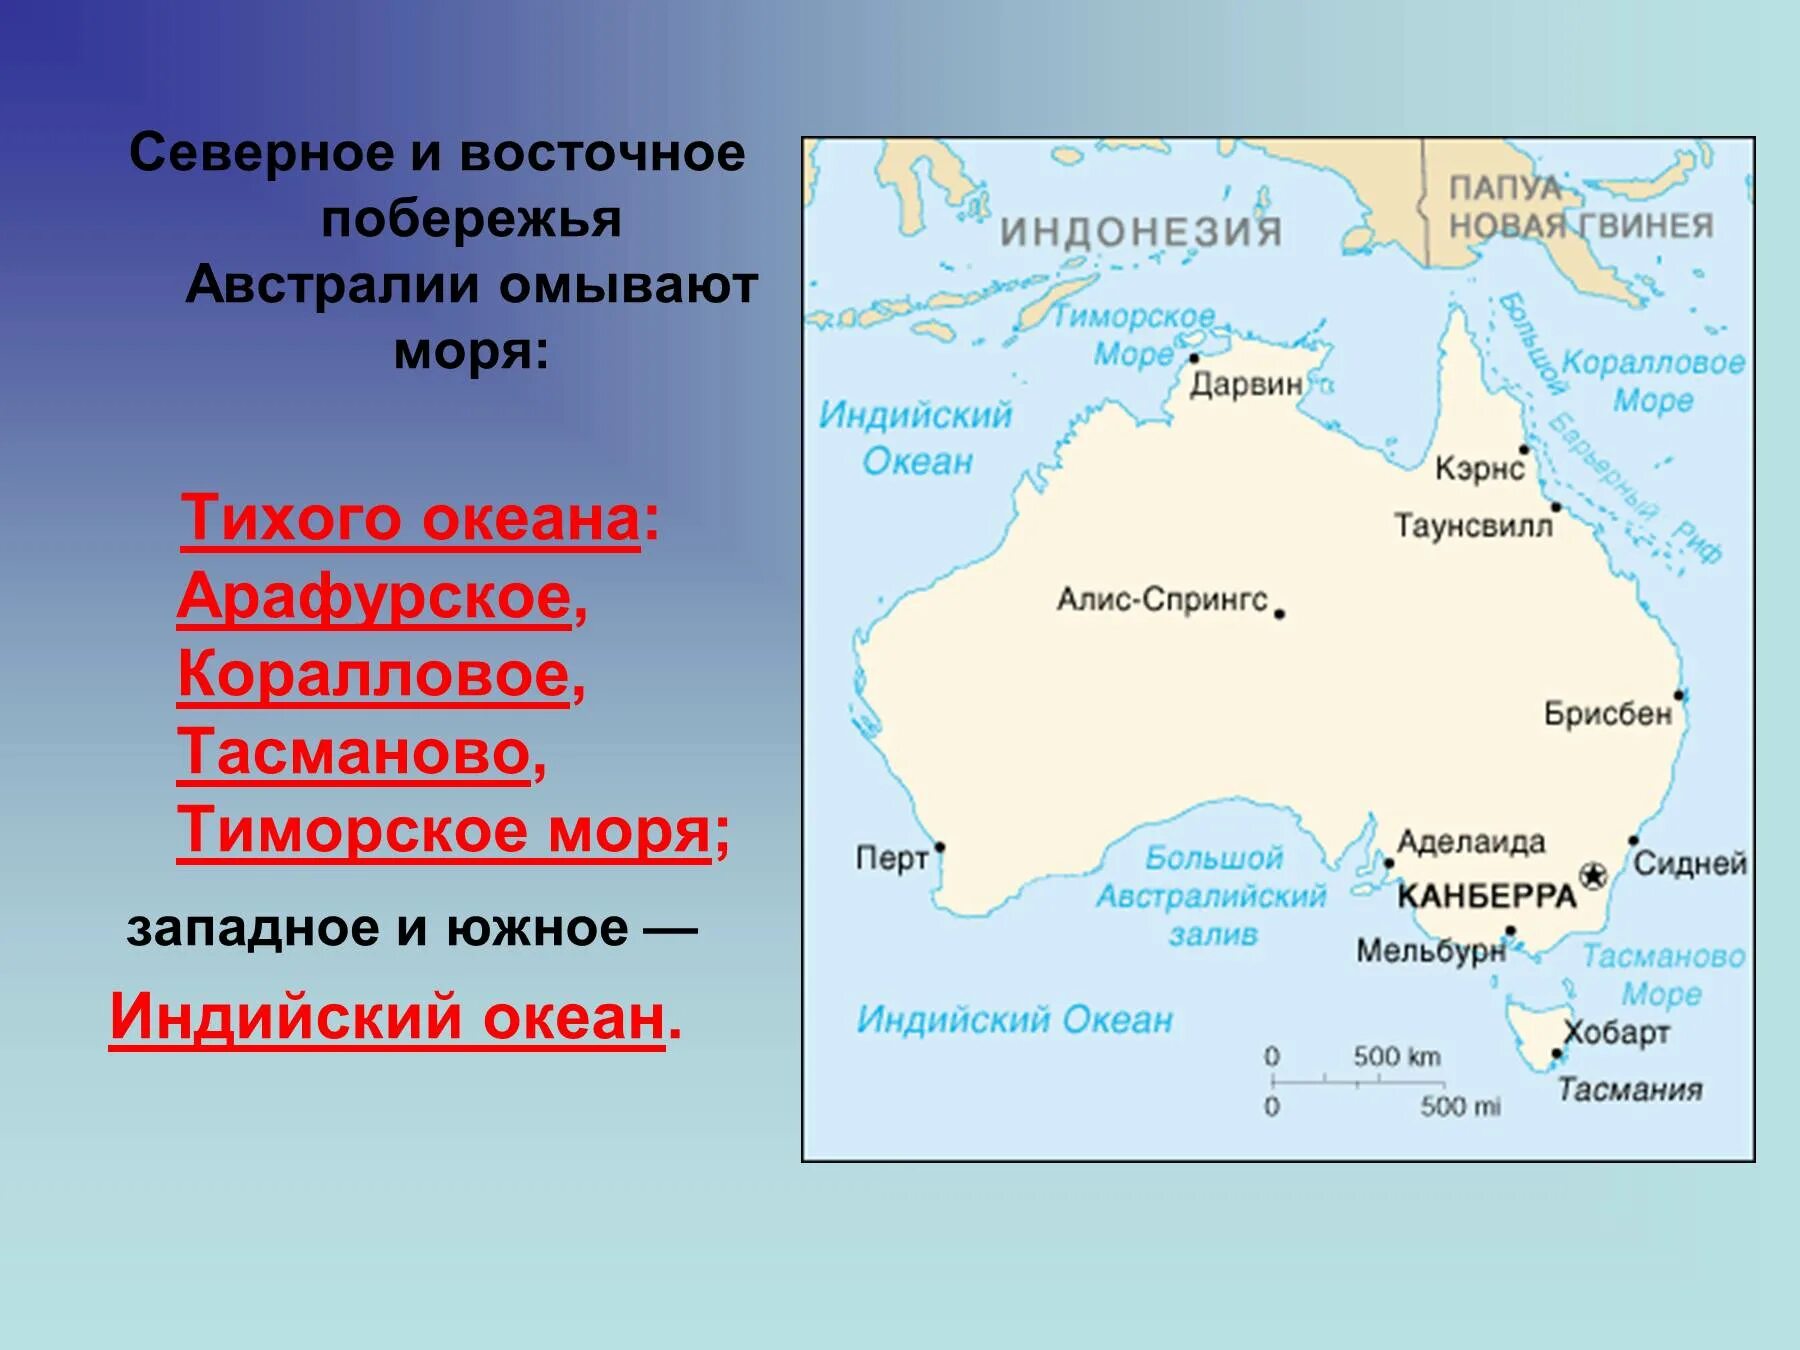 Крупный остров на северо востоке австралии. Моря: тасманово, Тиморское, коралловое, Арафурское.. Тасманово море на карте Австралии. Австралия моря: Тиморское, Арафурское, коралловое, тасманово.. Австралия моря и океаны омывающие материк.